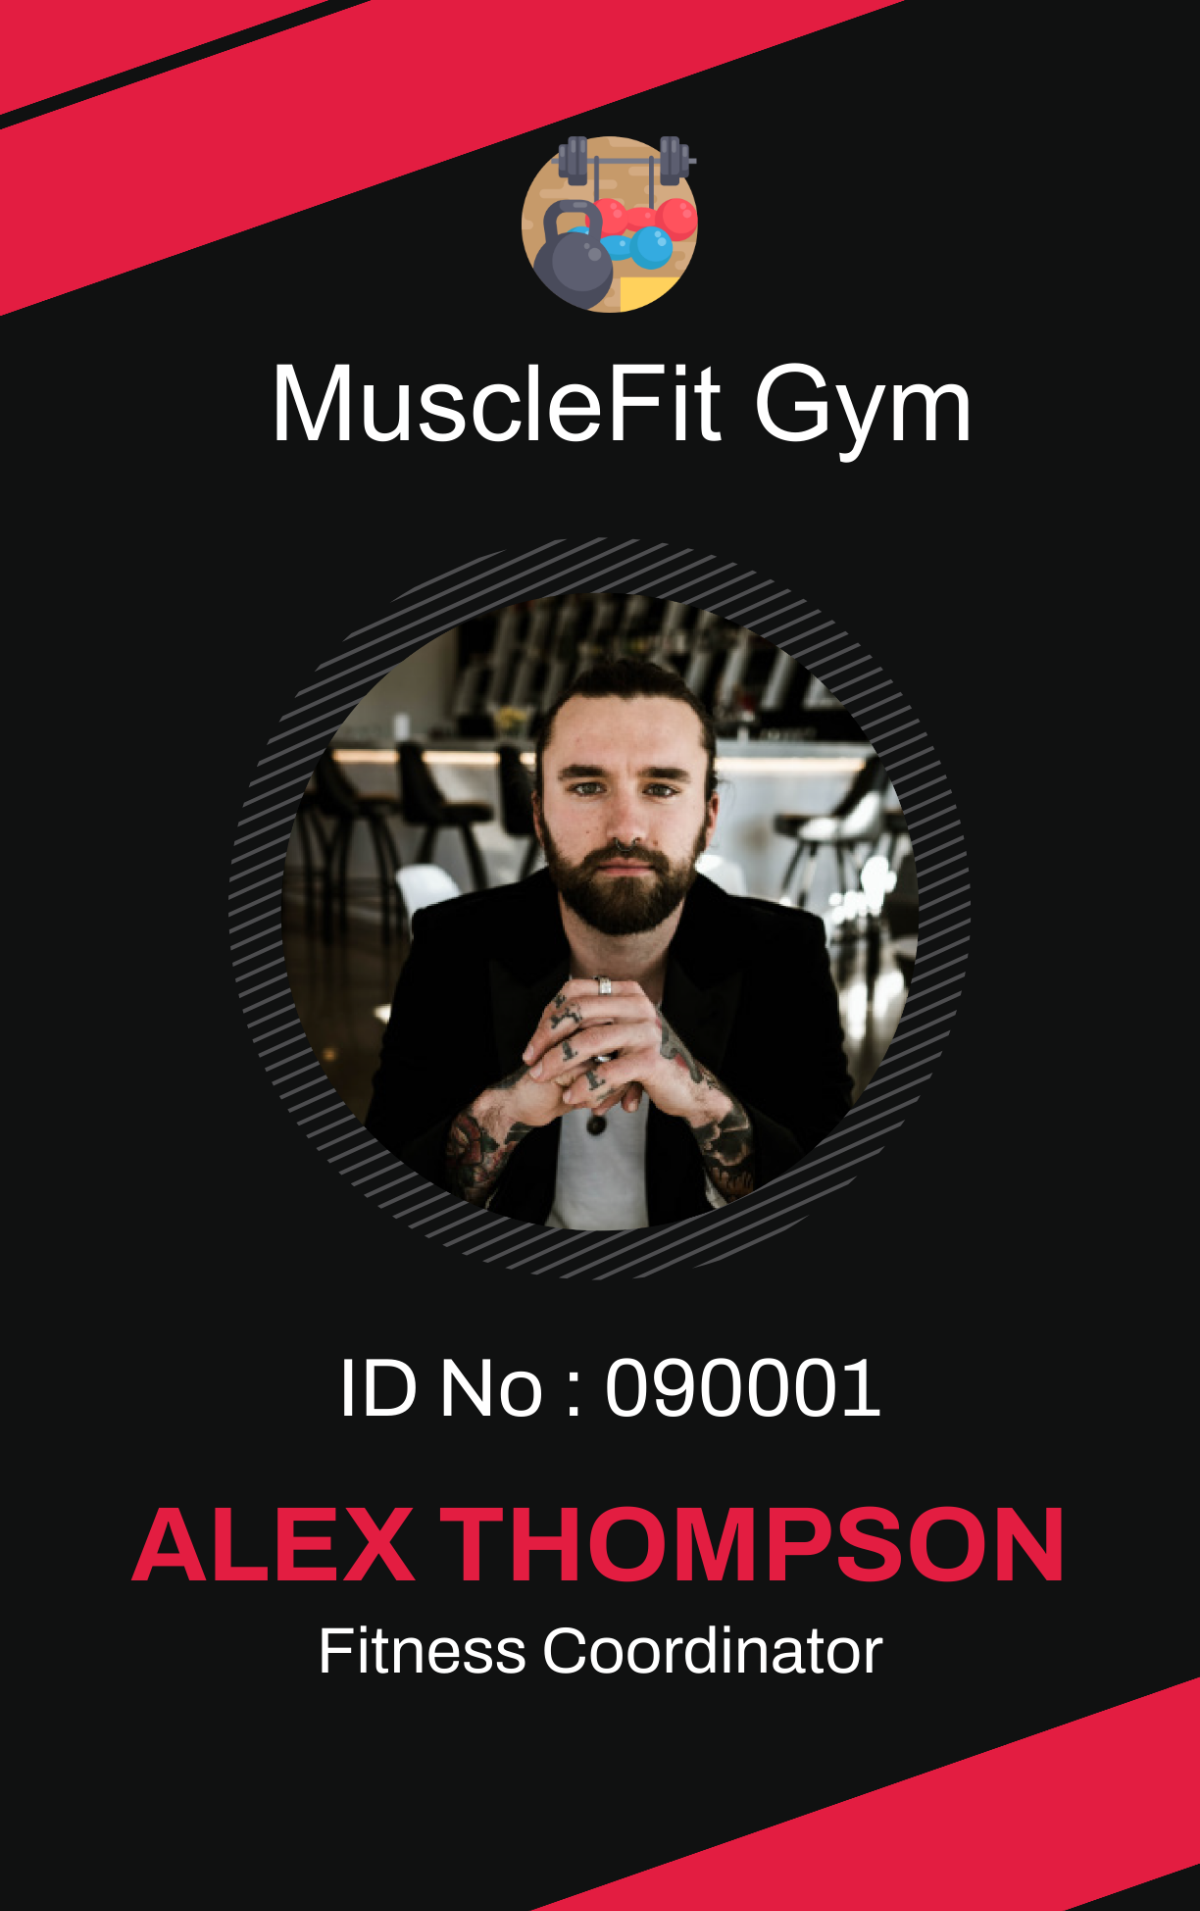 Gym Trainer ID Card